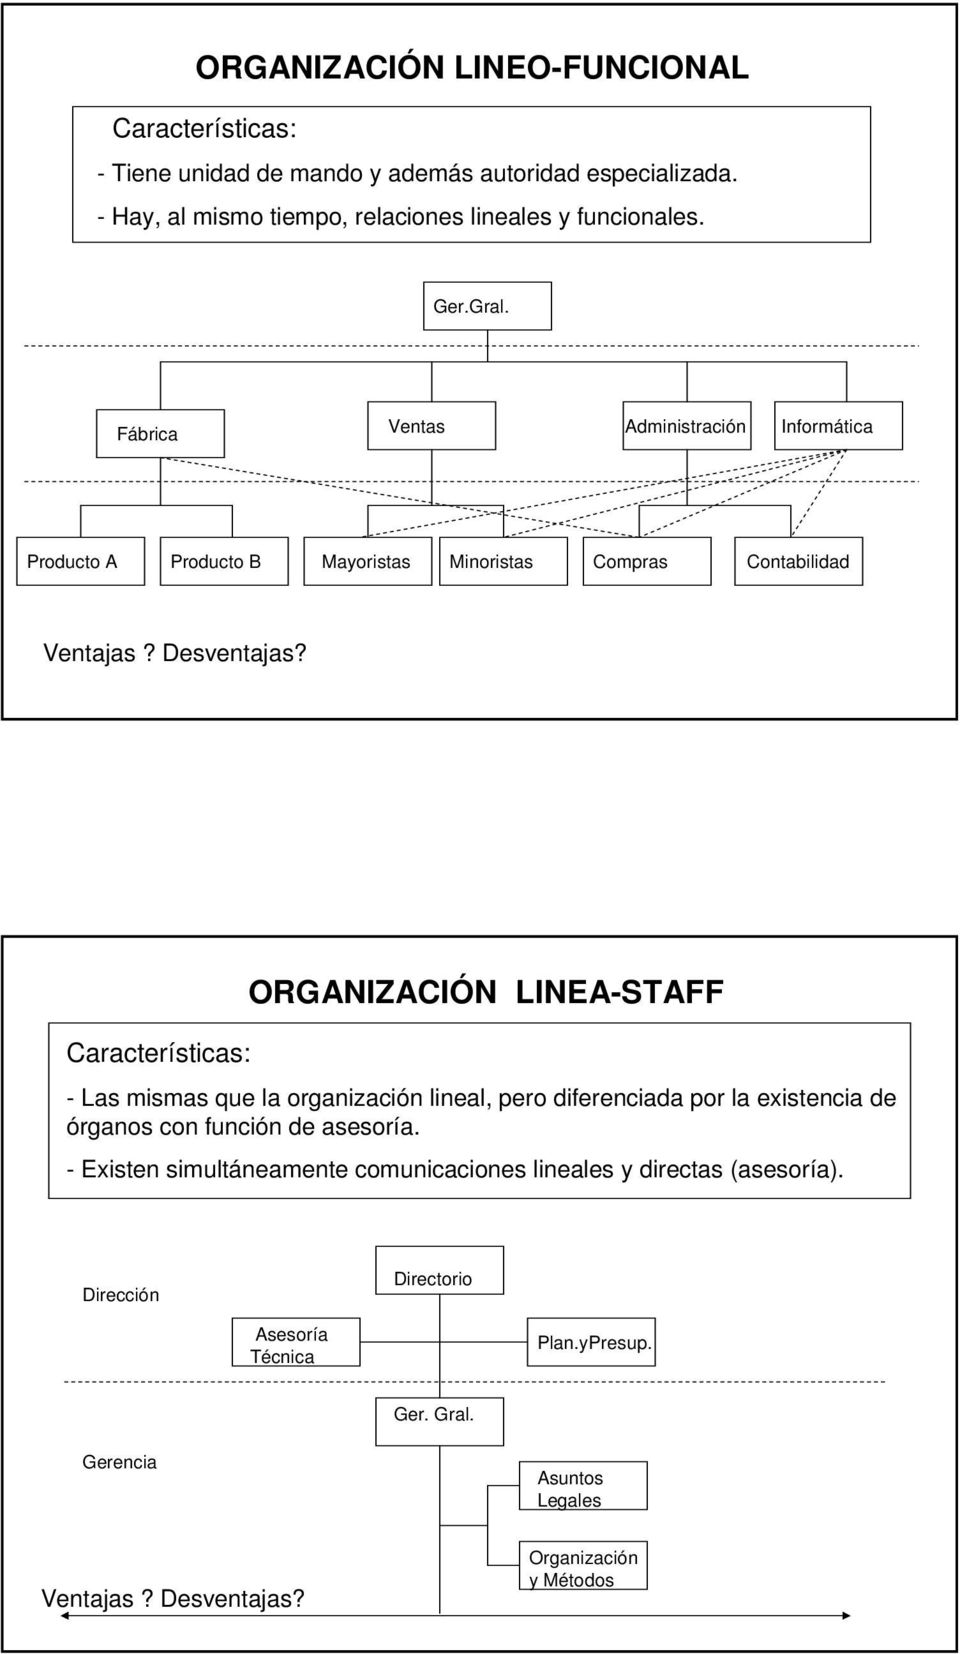 Características: ORGANIZACIÓN LINEA-STAFF - Las mismas que la organización lineal, pero diferenciada por la existencia de órganos con función de asesoría.